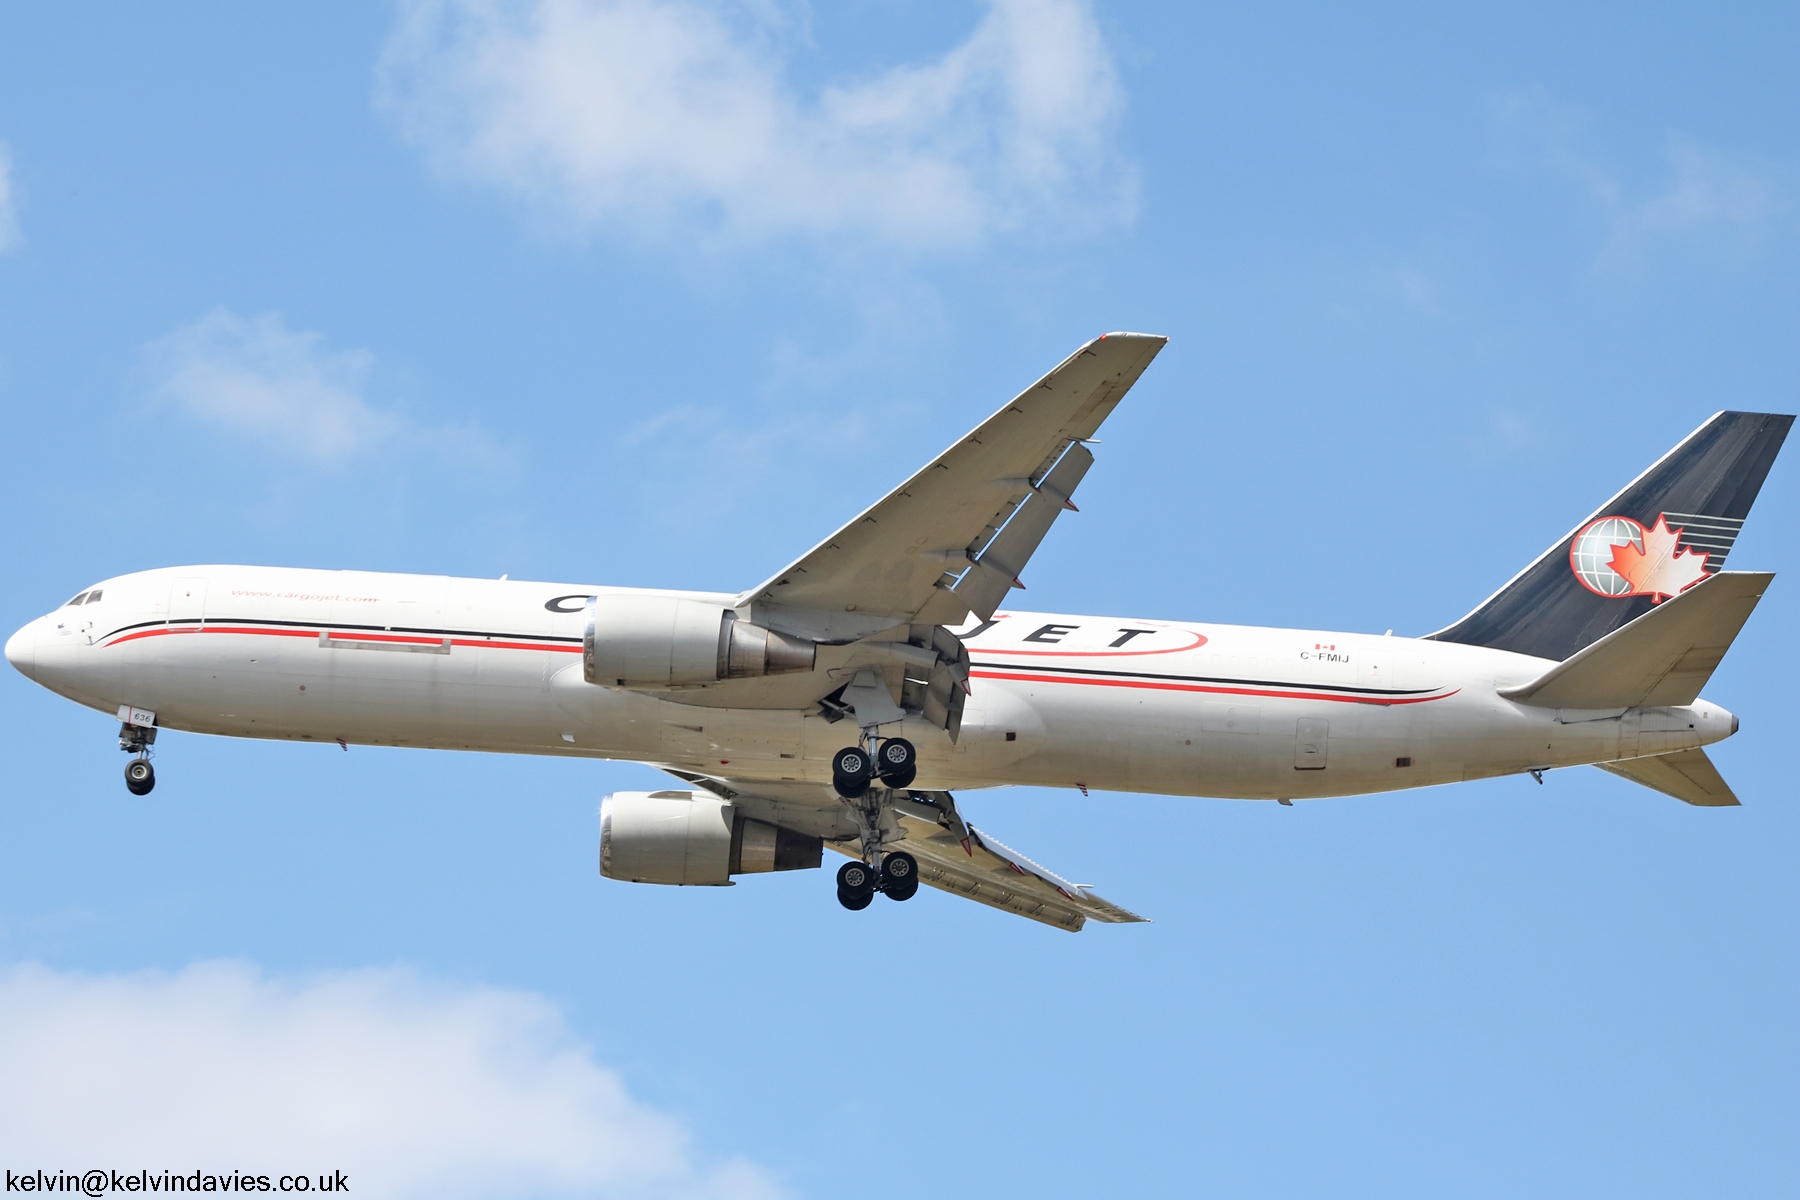 Cargojet 767 C-FMIJ